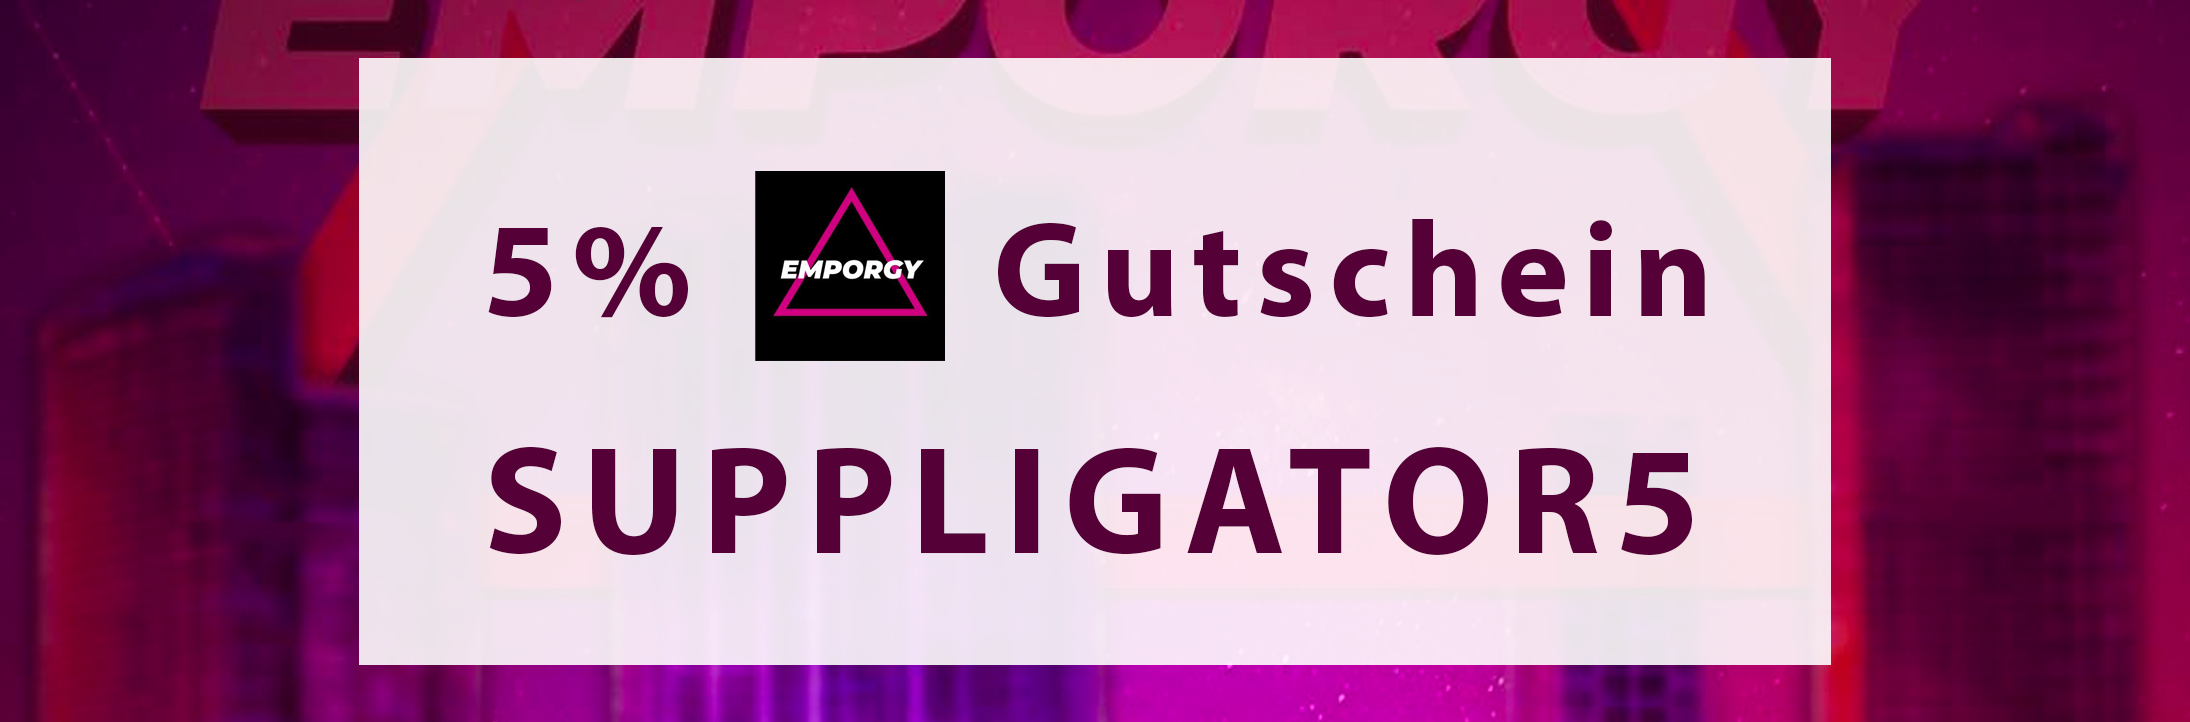 5% Gutschein für Emporgy im Mai | Suppligator.de